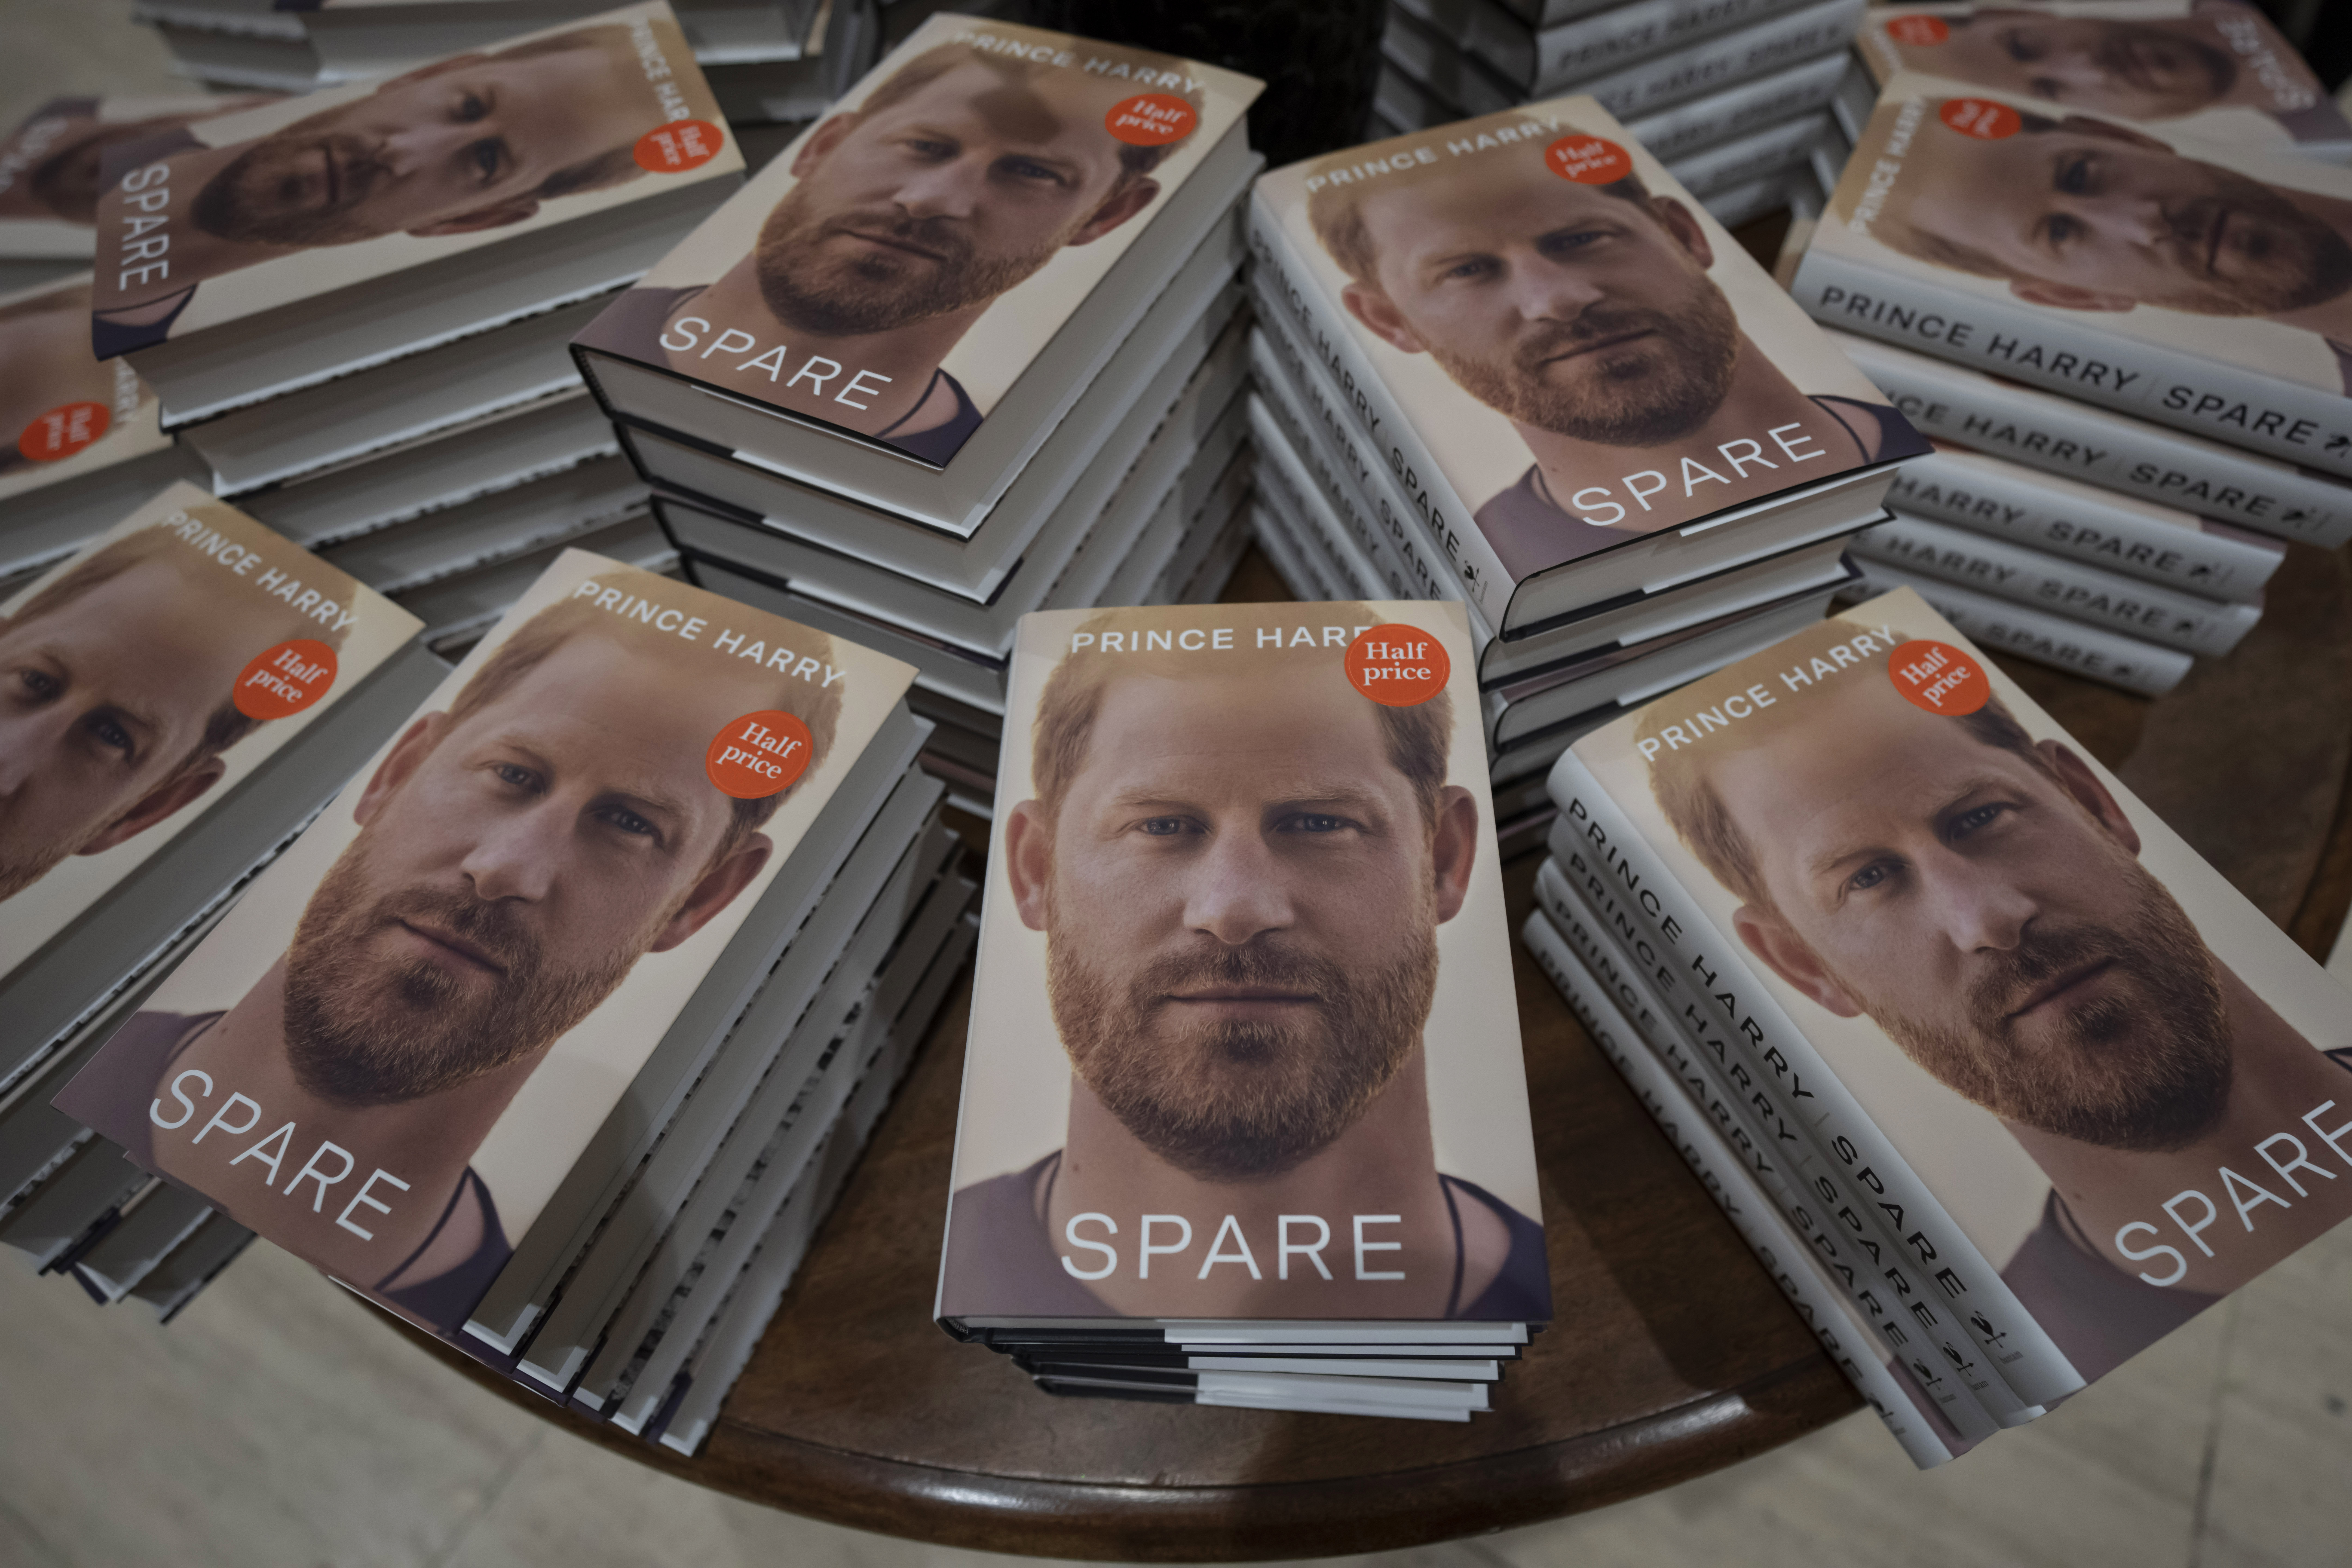 Ejemplares del libro del príncipe Enrique "Spare" en una librería en Londres  (Foto AP)